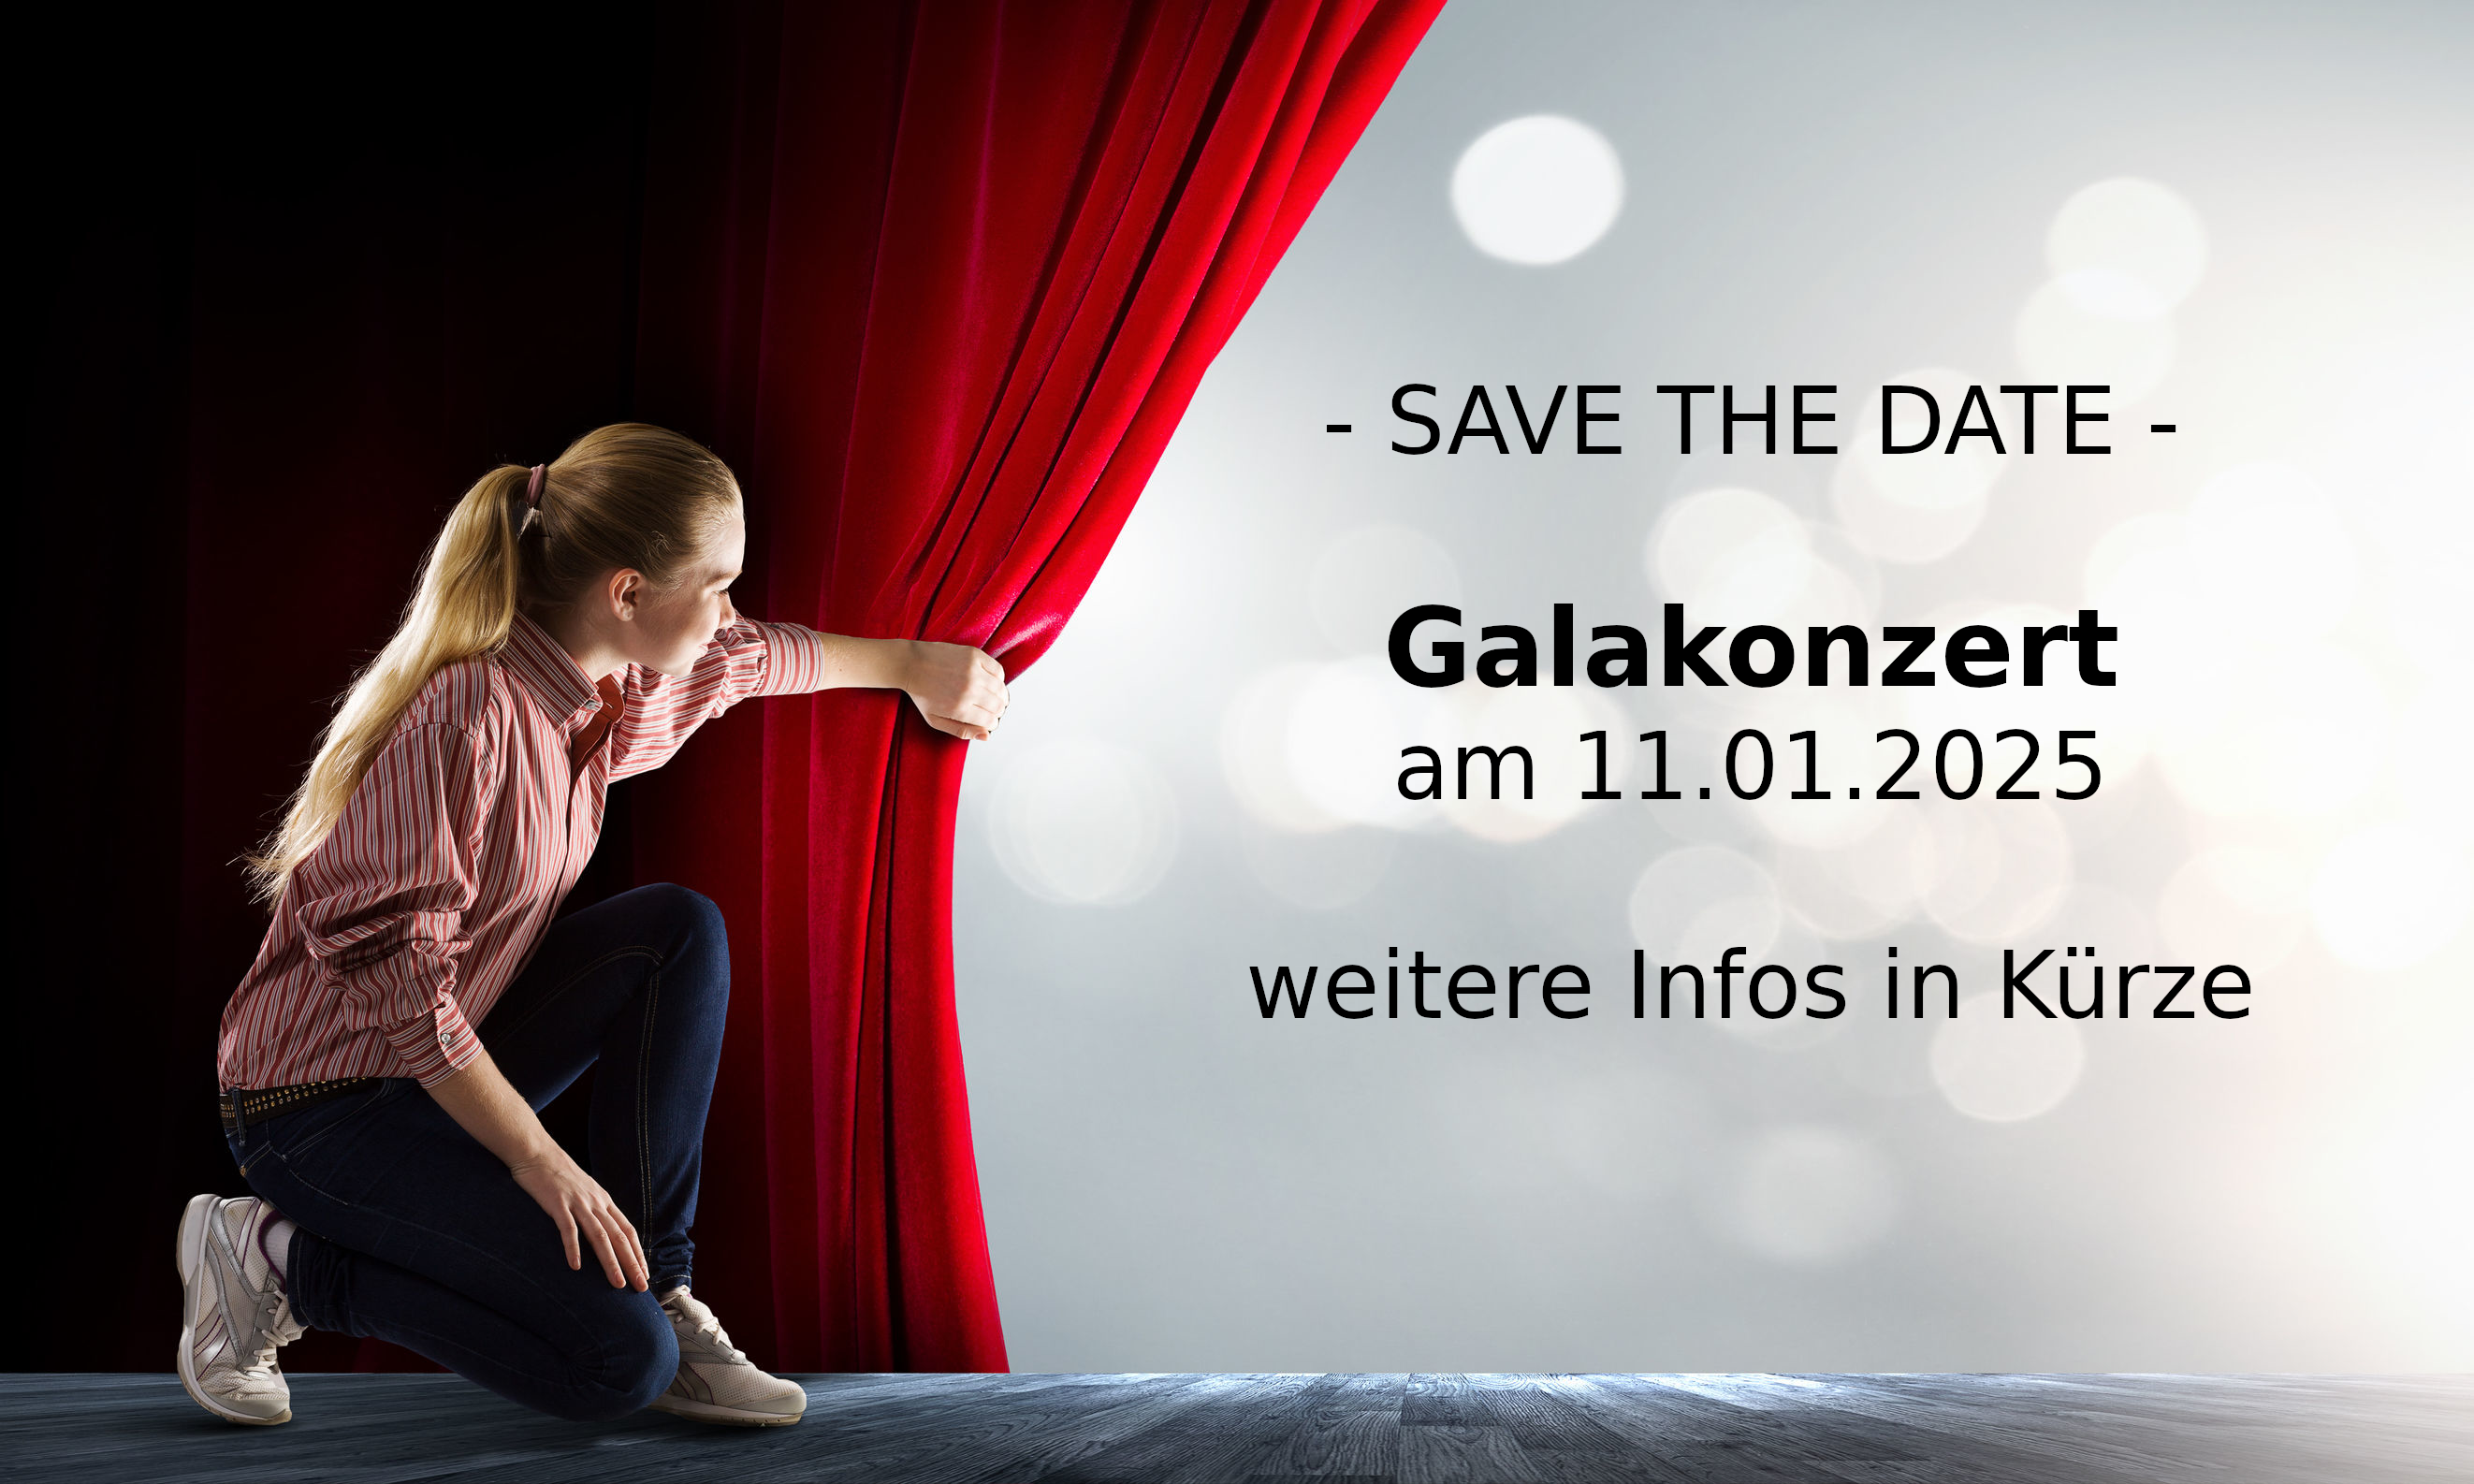 Save the Date - Galakonzert am 11.01.2025. Weitere Infos in Kürze.